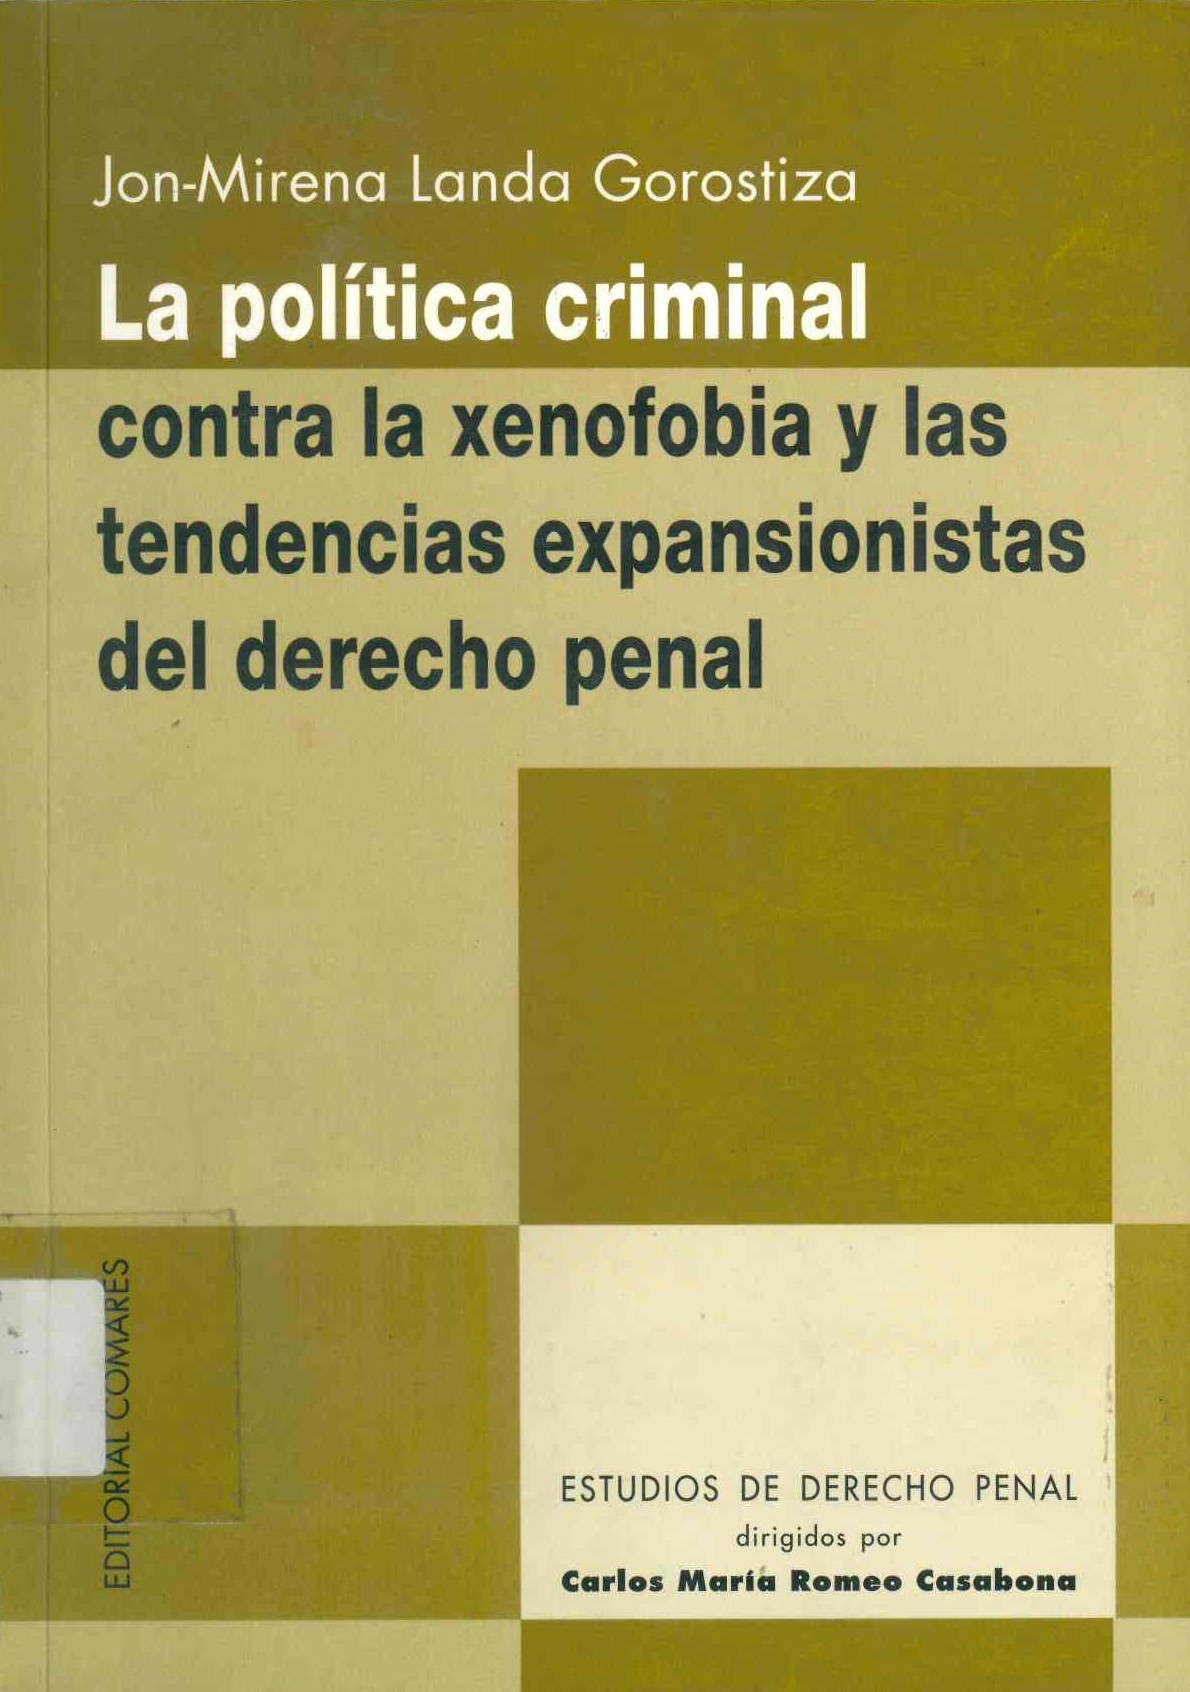 La política criminal contra la xenofobia y las tendencias expansionistas del derecho penal